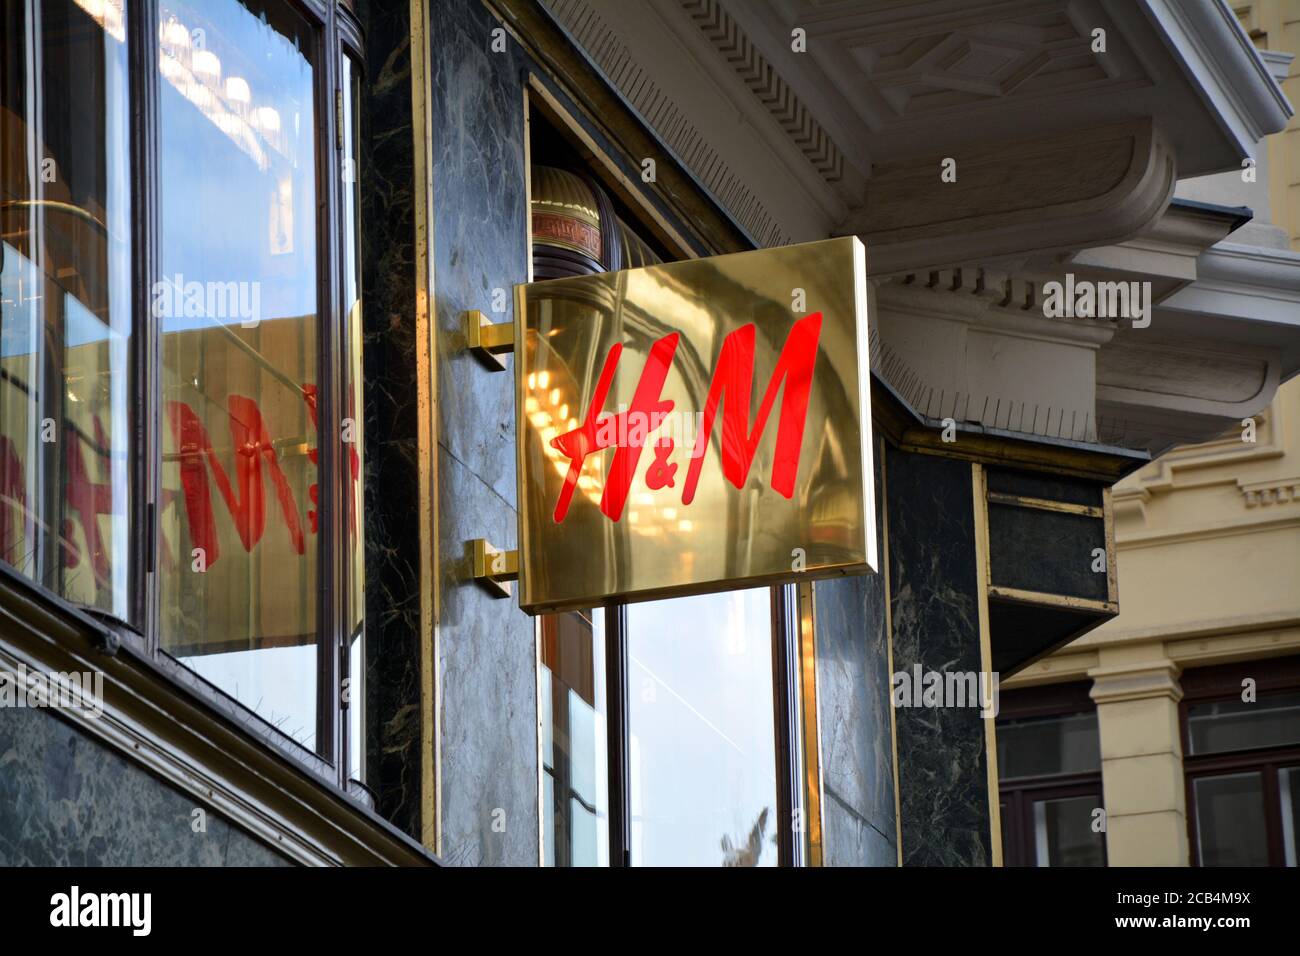 VIENNE, AUTRICHE - 03 MAI 2016 : magasin du logo H&M à Vienne. H&M est une société suédoise de vêtements, deuxième plus grand détaillant mondial de vêtements. Banque D'Images